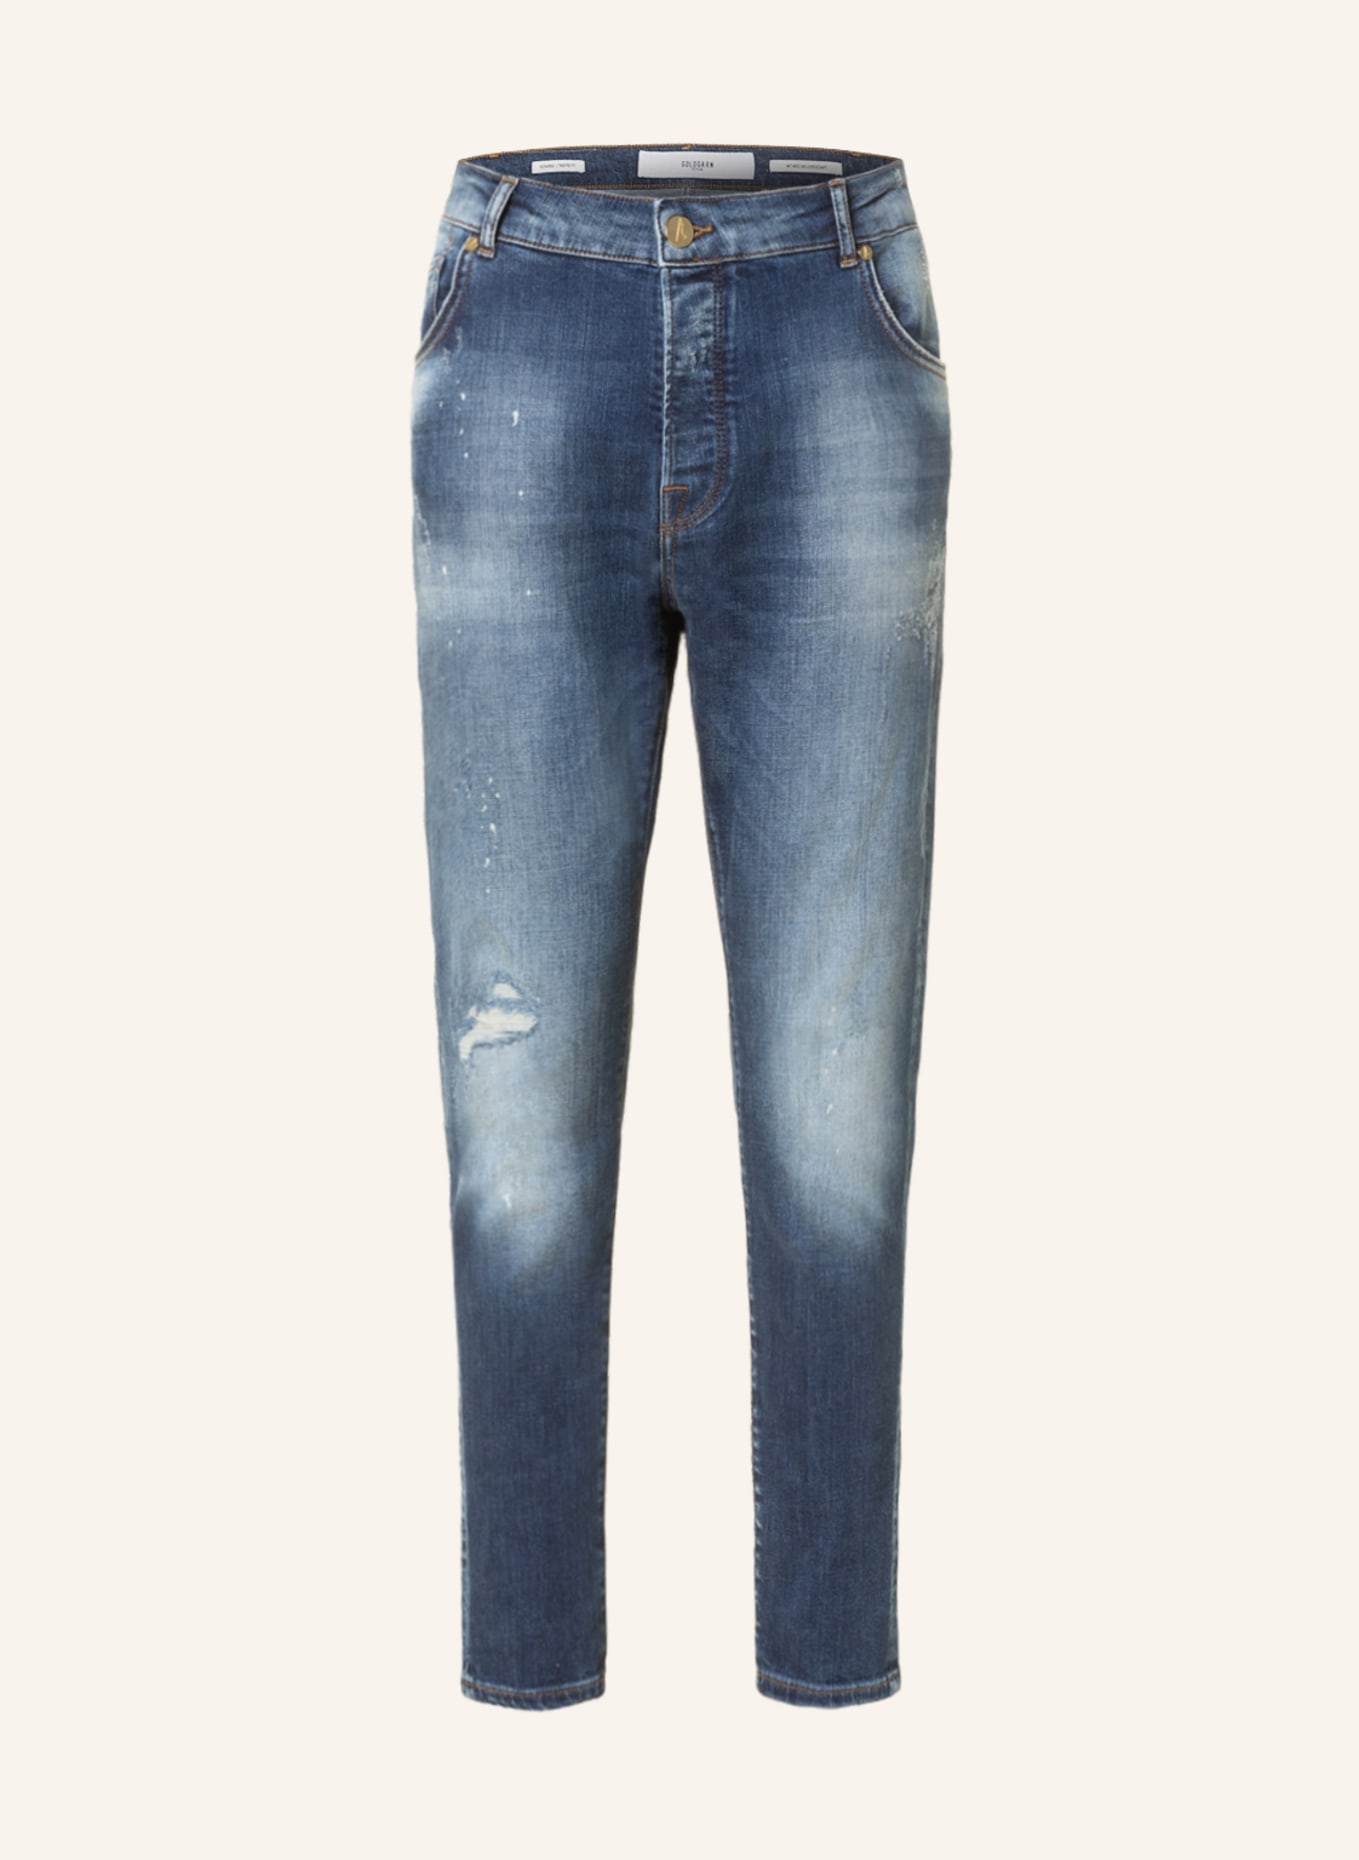 GOLDGARN DENIM Jeans NECKARAU twisted fit, Color: 1090 MID BLUE (Image 1)